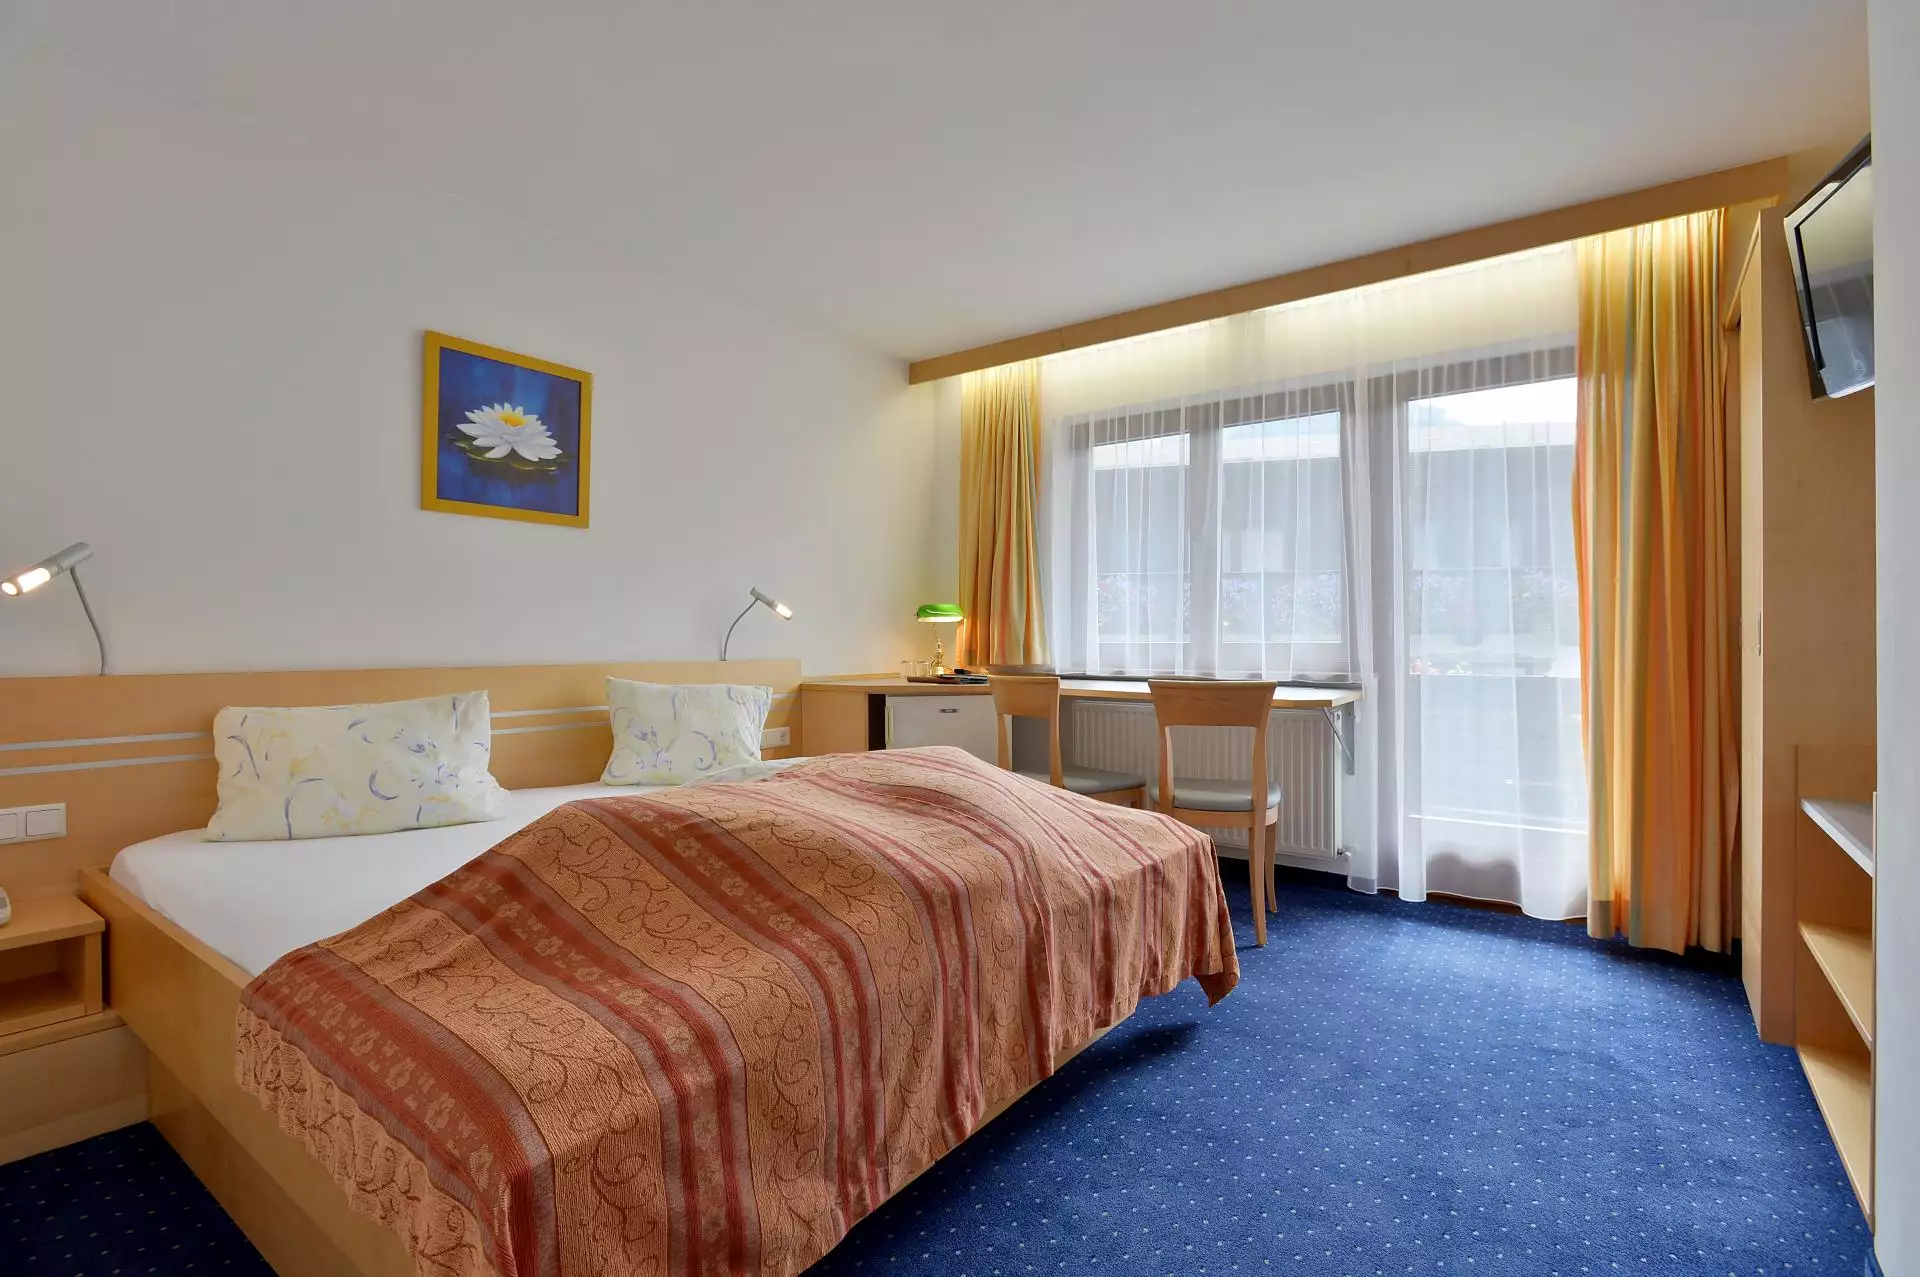 Doppelzimmer Hotel #Standard Zimmer#Wohneinheiten